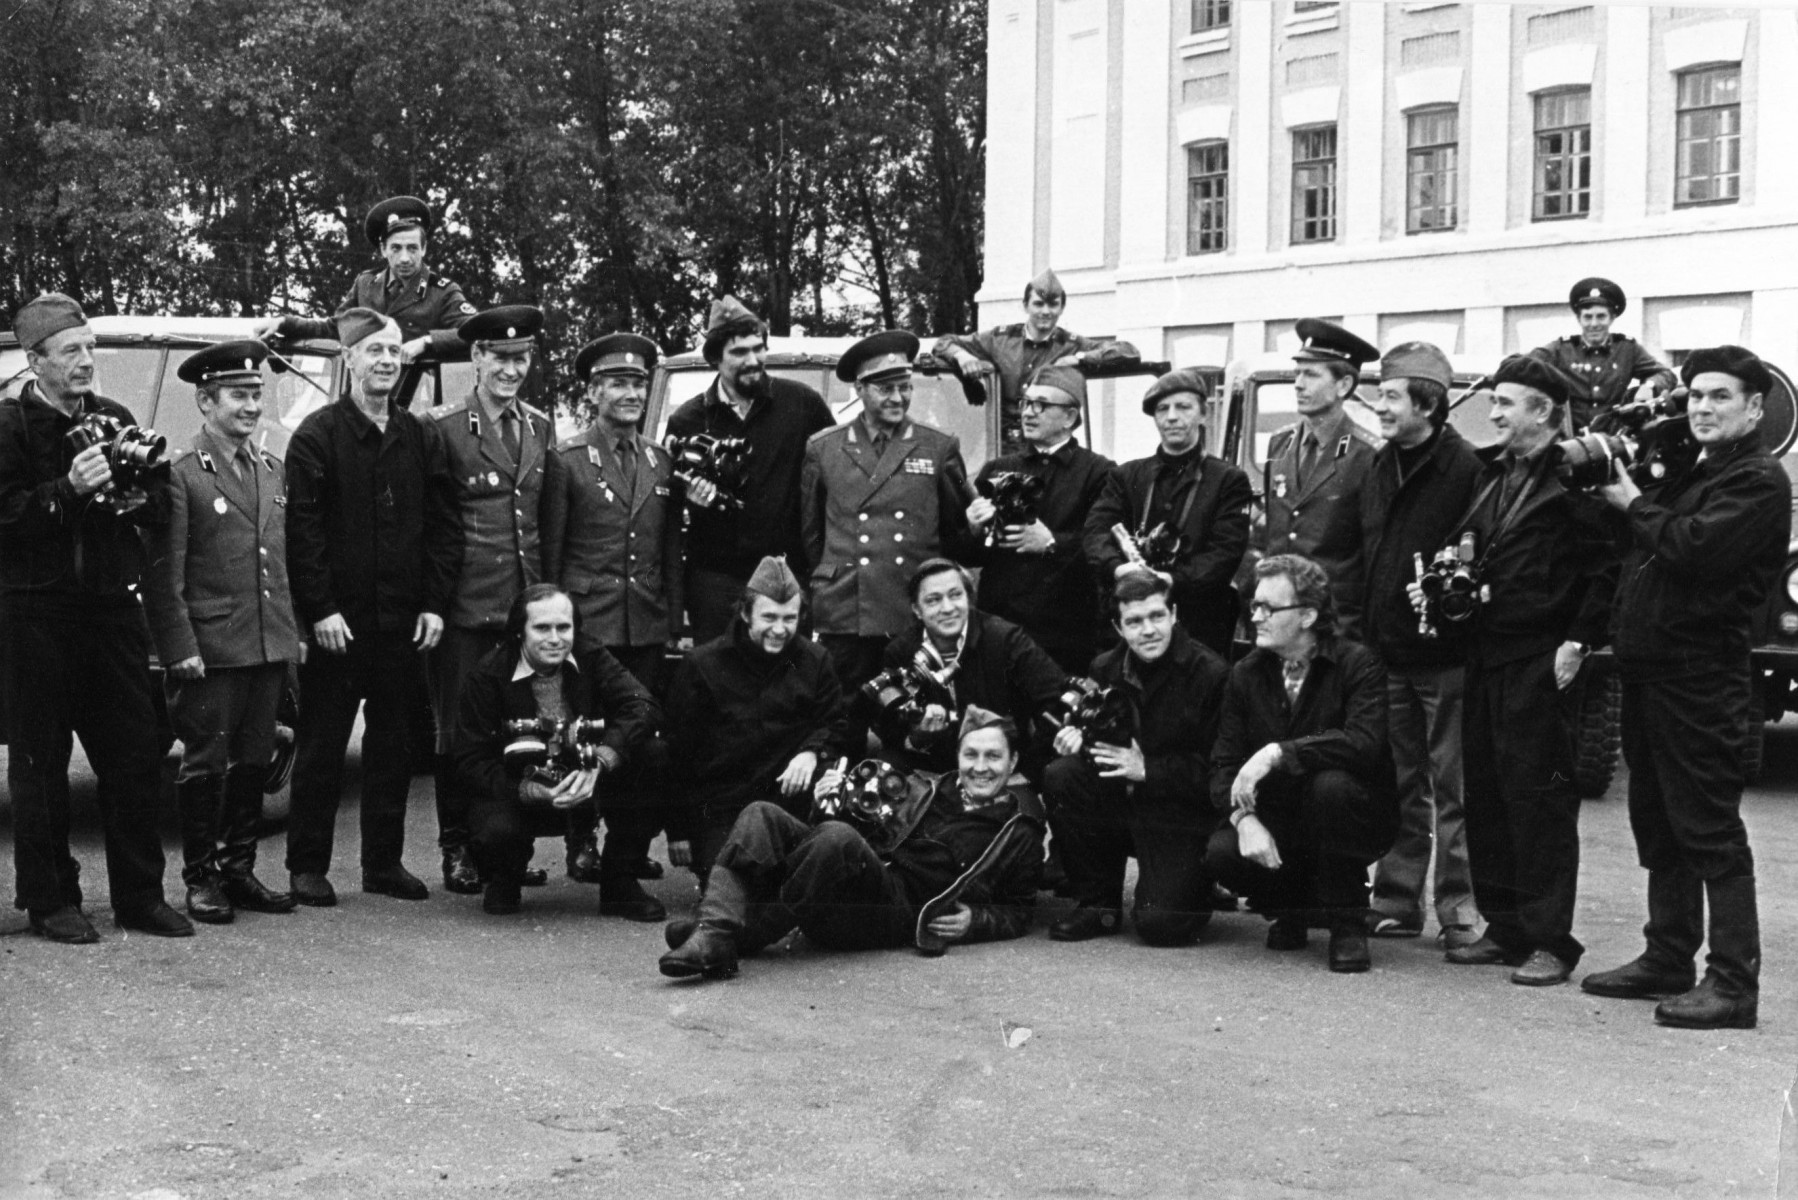 Съемочная группа ЦСДФ во время учений «Запад-81». Константин Дурнов с кинокамерой на первом плане (сидит третий слева). Август-сентябрь 1981 года. Фото из личного архива оператора Игоря Осипова.